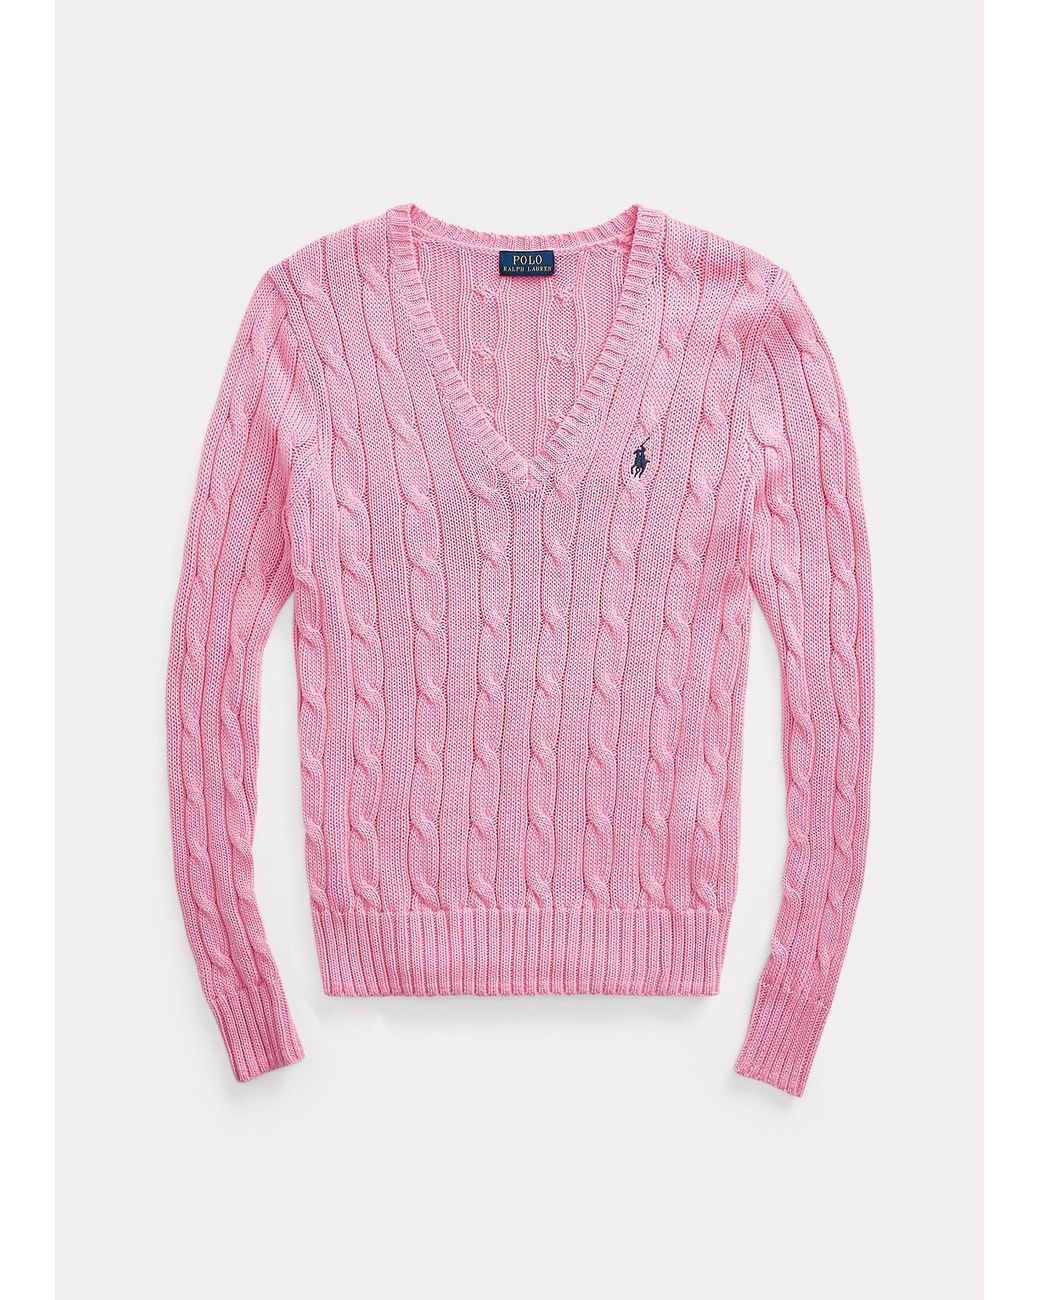 Polo Ralph Lauren Baumwoll-Zopfpullover mit V-Ausschnitt in Pink | Lyst AT